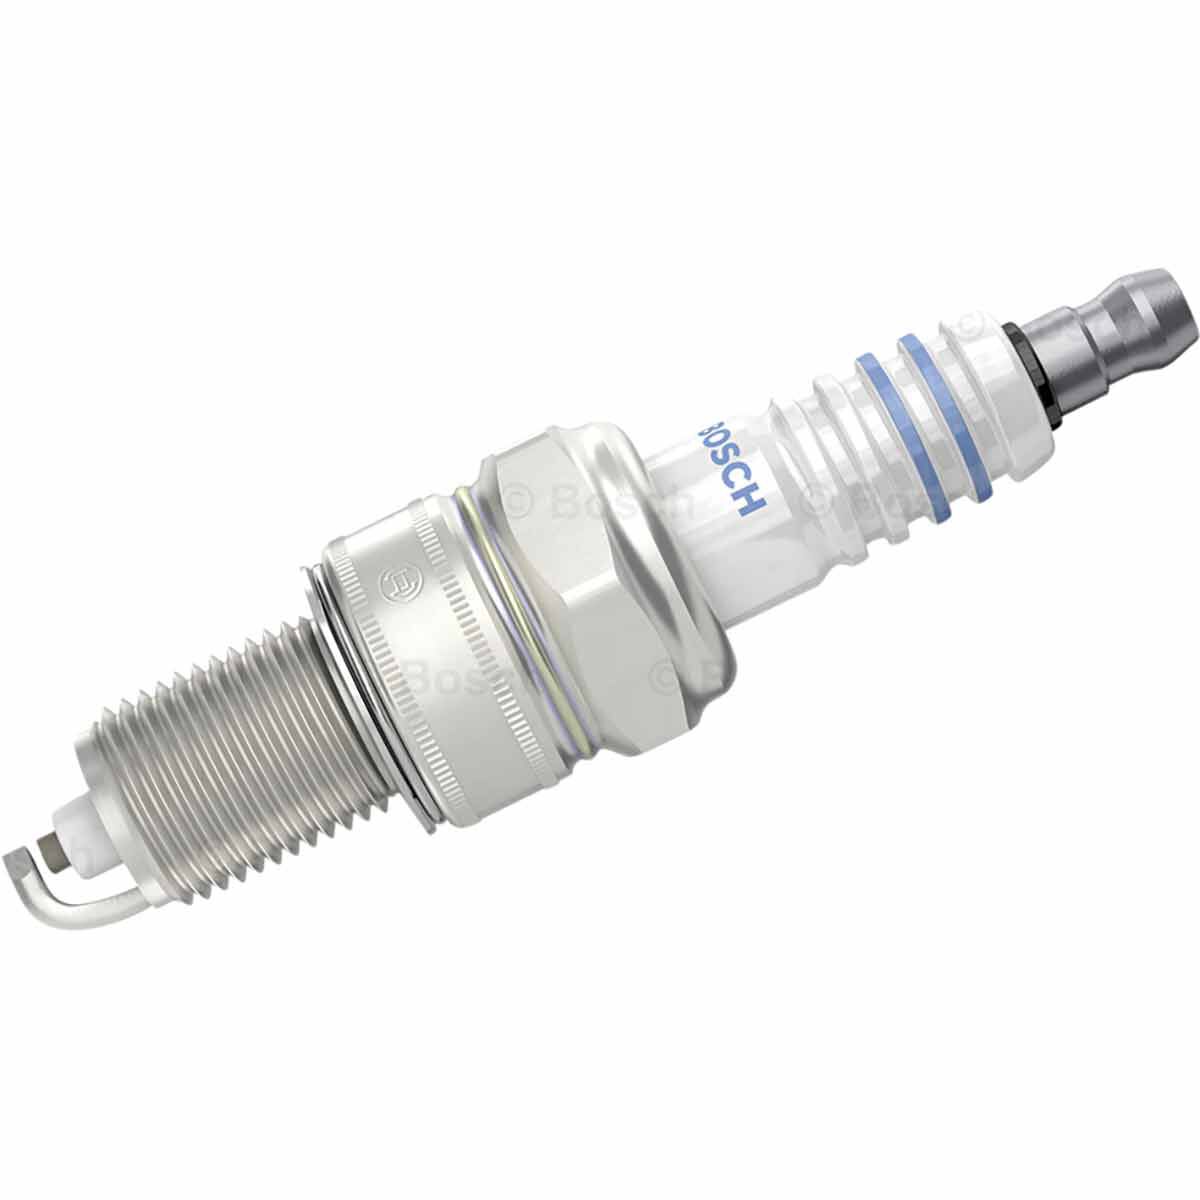 Bosch Spark Plug Single WR8LC+ / WR8LC, , scaau_hi-res